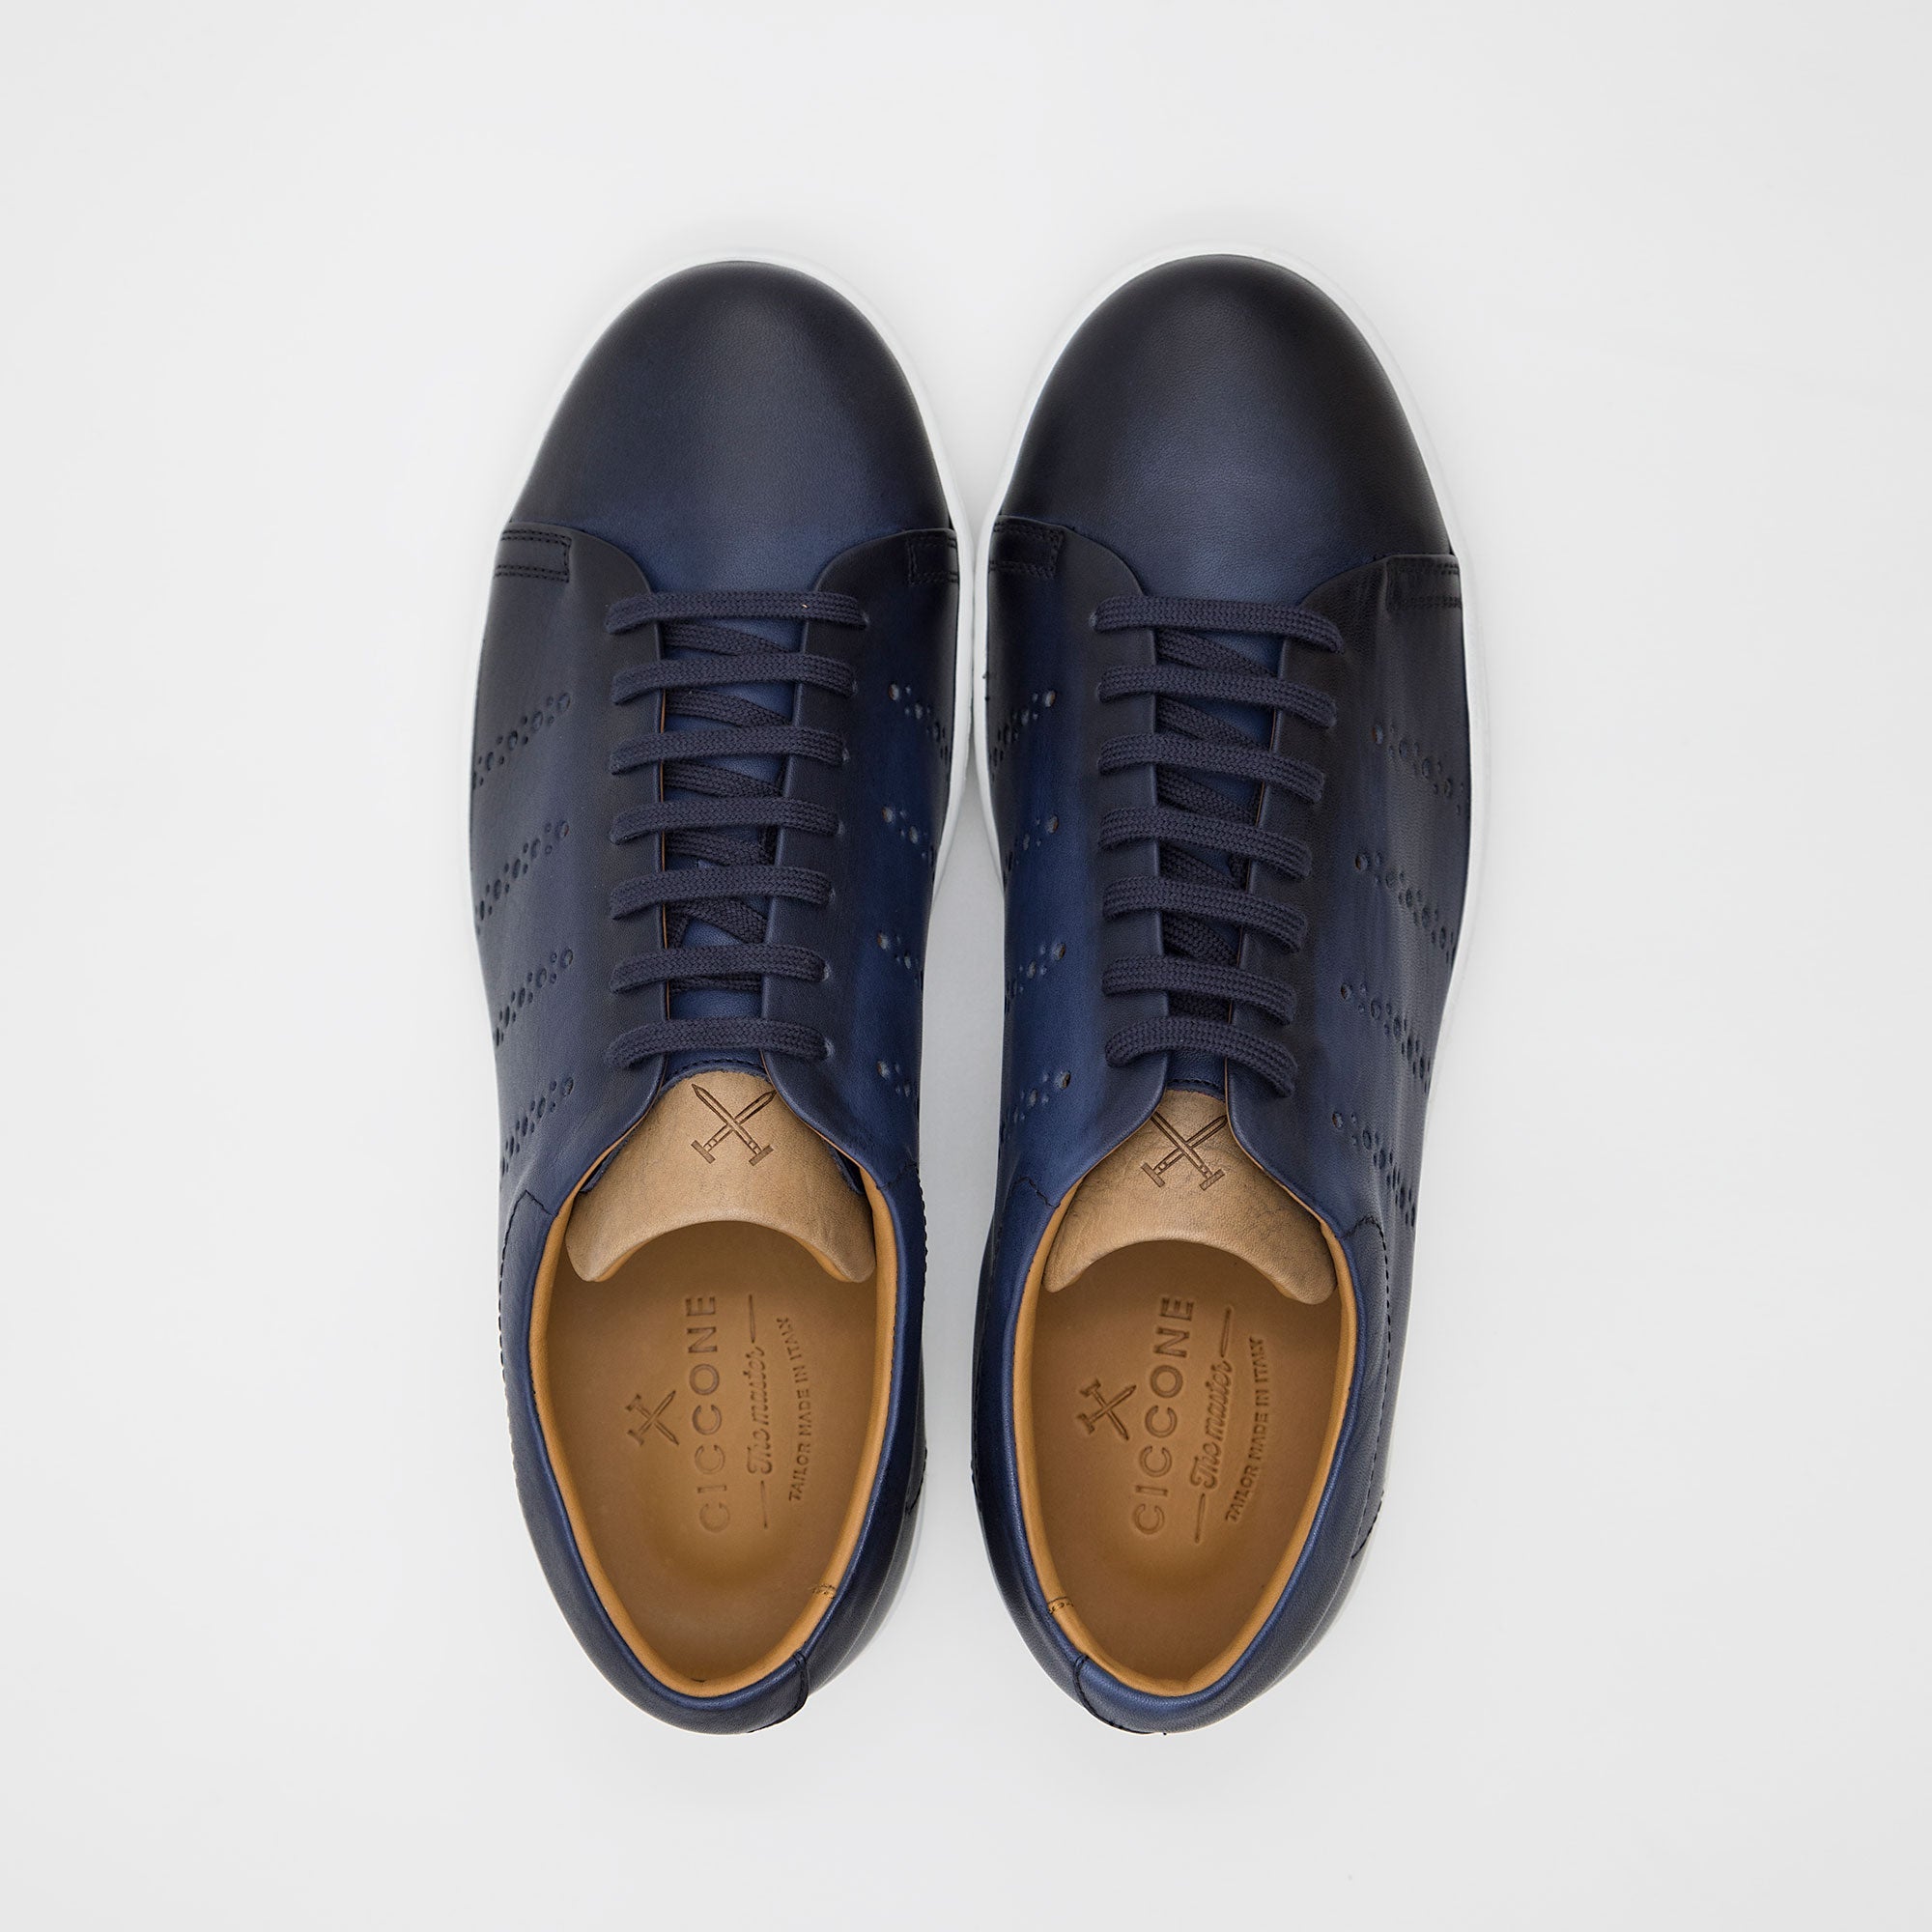 Sneakers da uomo blu in pelle - Napoli - Ciccone